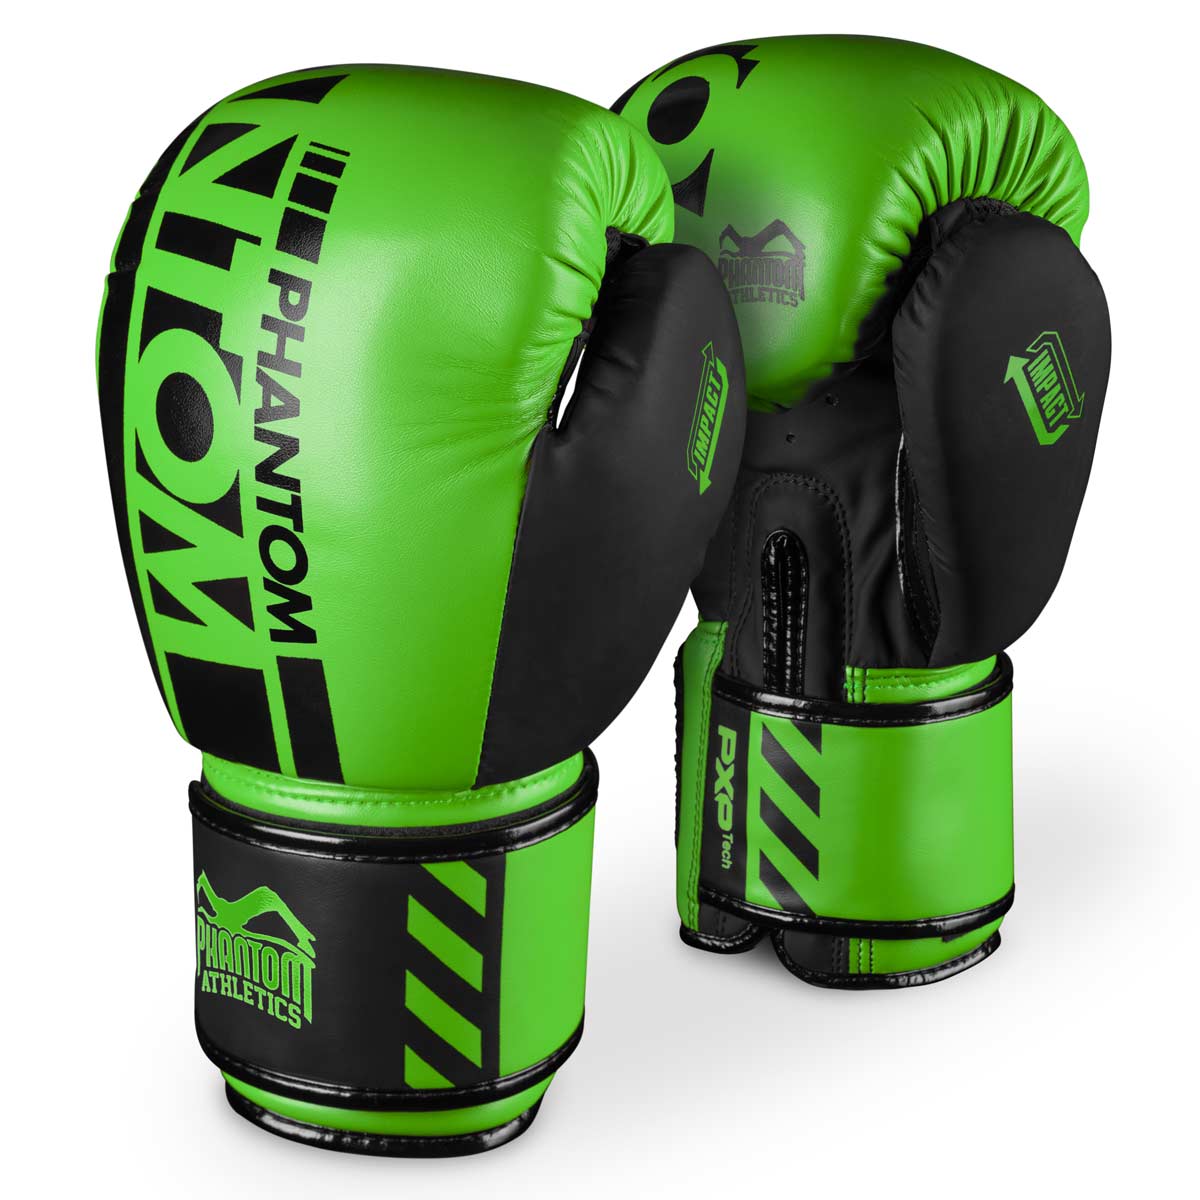 Phantom APEX NEON Boxhandschuhe. Hochwertige Boxing Gloves für deinen Kampfsport. Perfekte Verarbeitung machen diese Boxhandschuhe ideal für Training, Sparring und Wettkampf. Ideal für MMA, Muay Thai, Boxen und Kickboxen. Hier in Neon Grün.